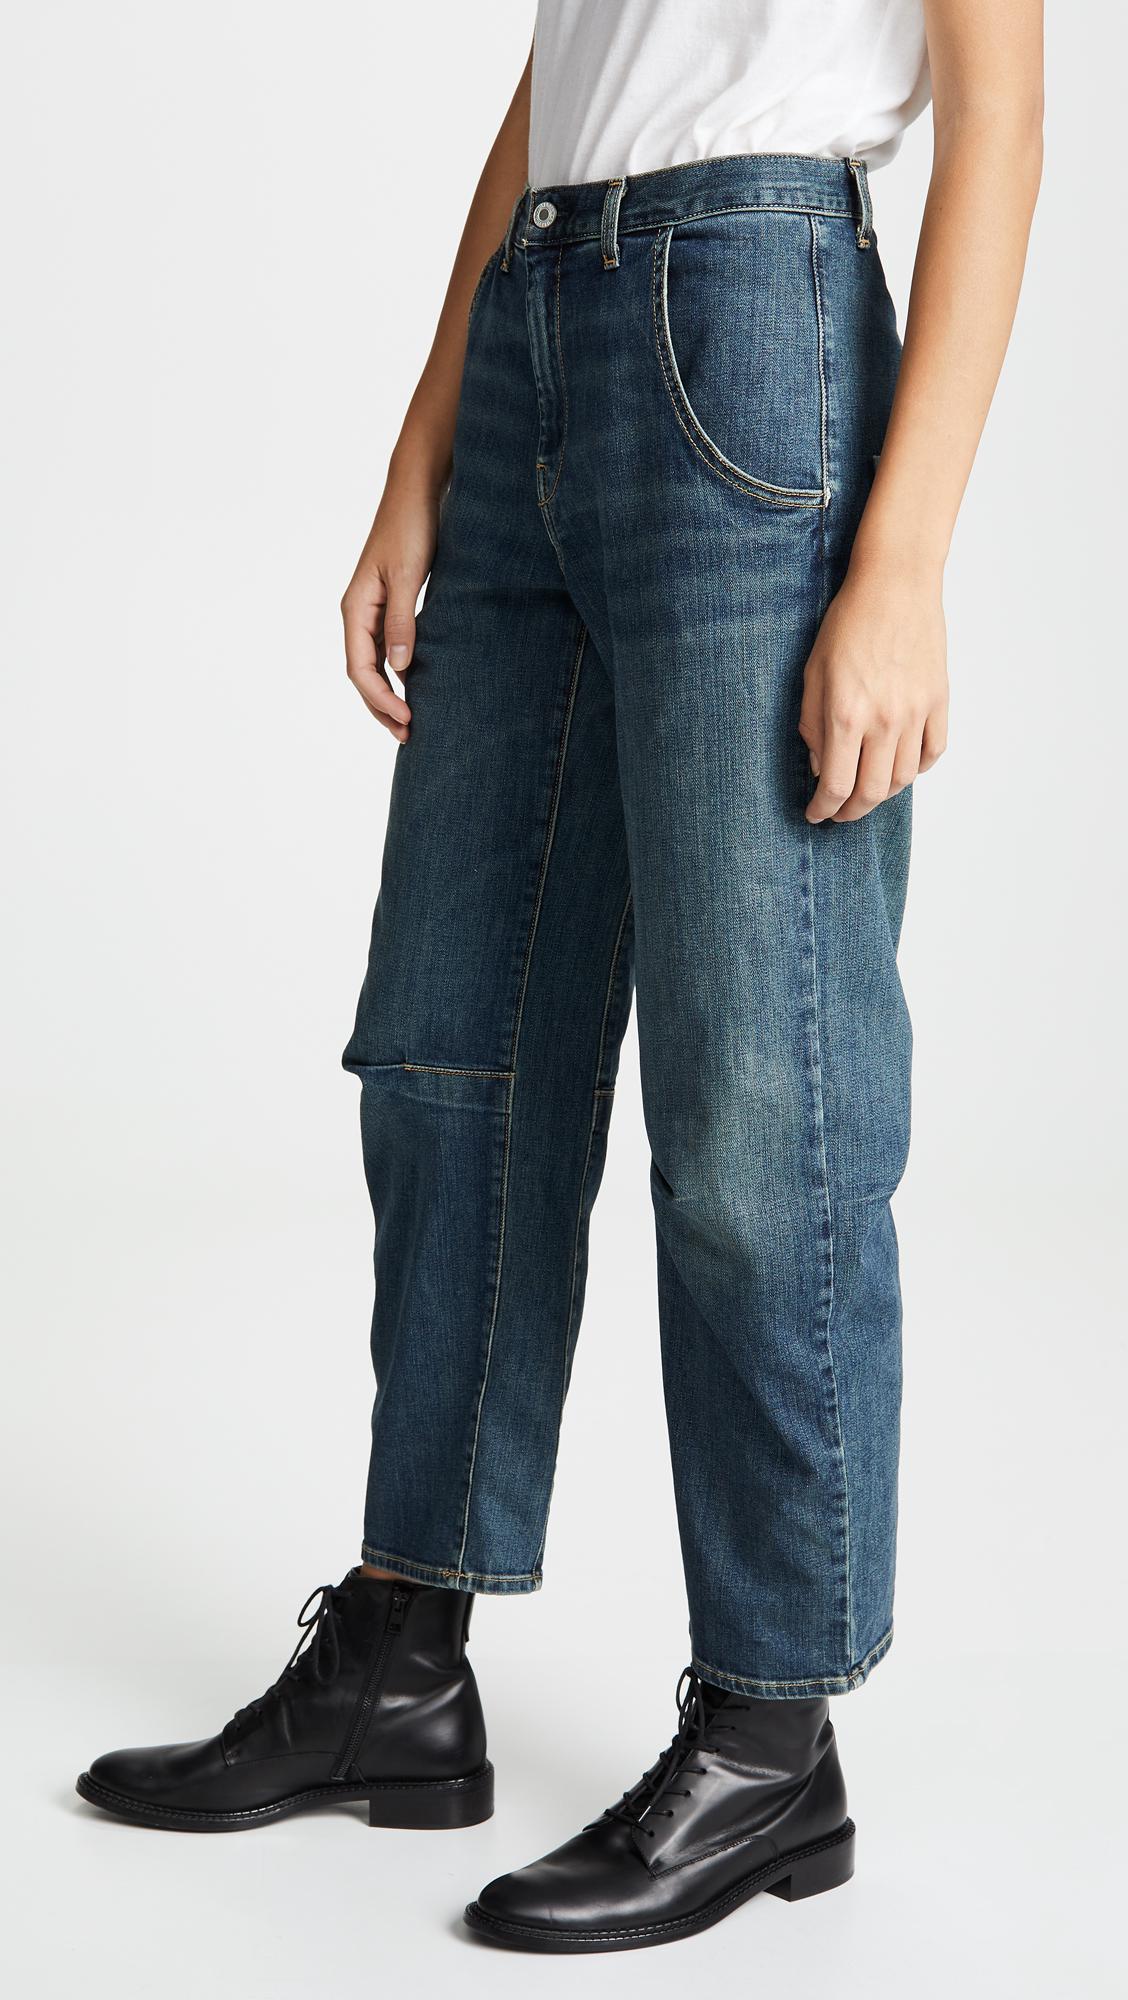 Nili Lotan Denim Emerson Jeans in Blue - Lyst